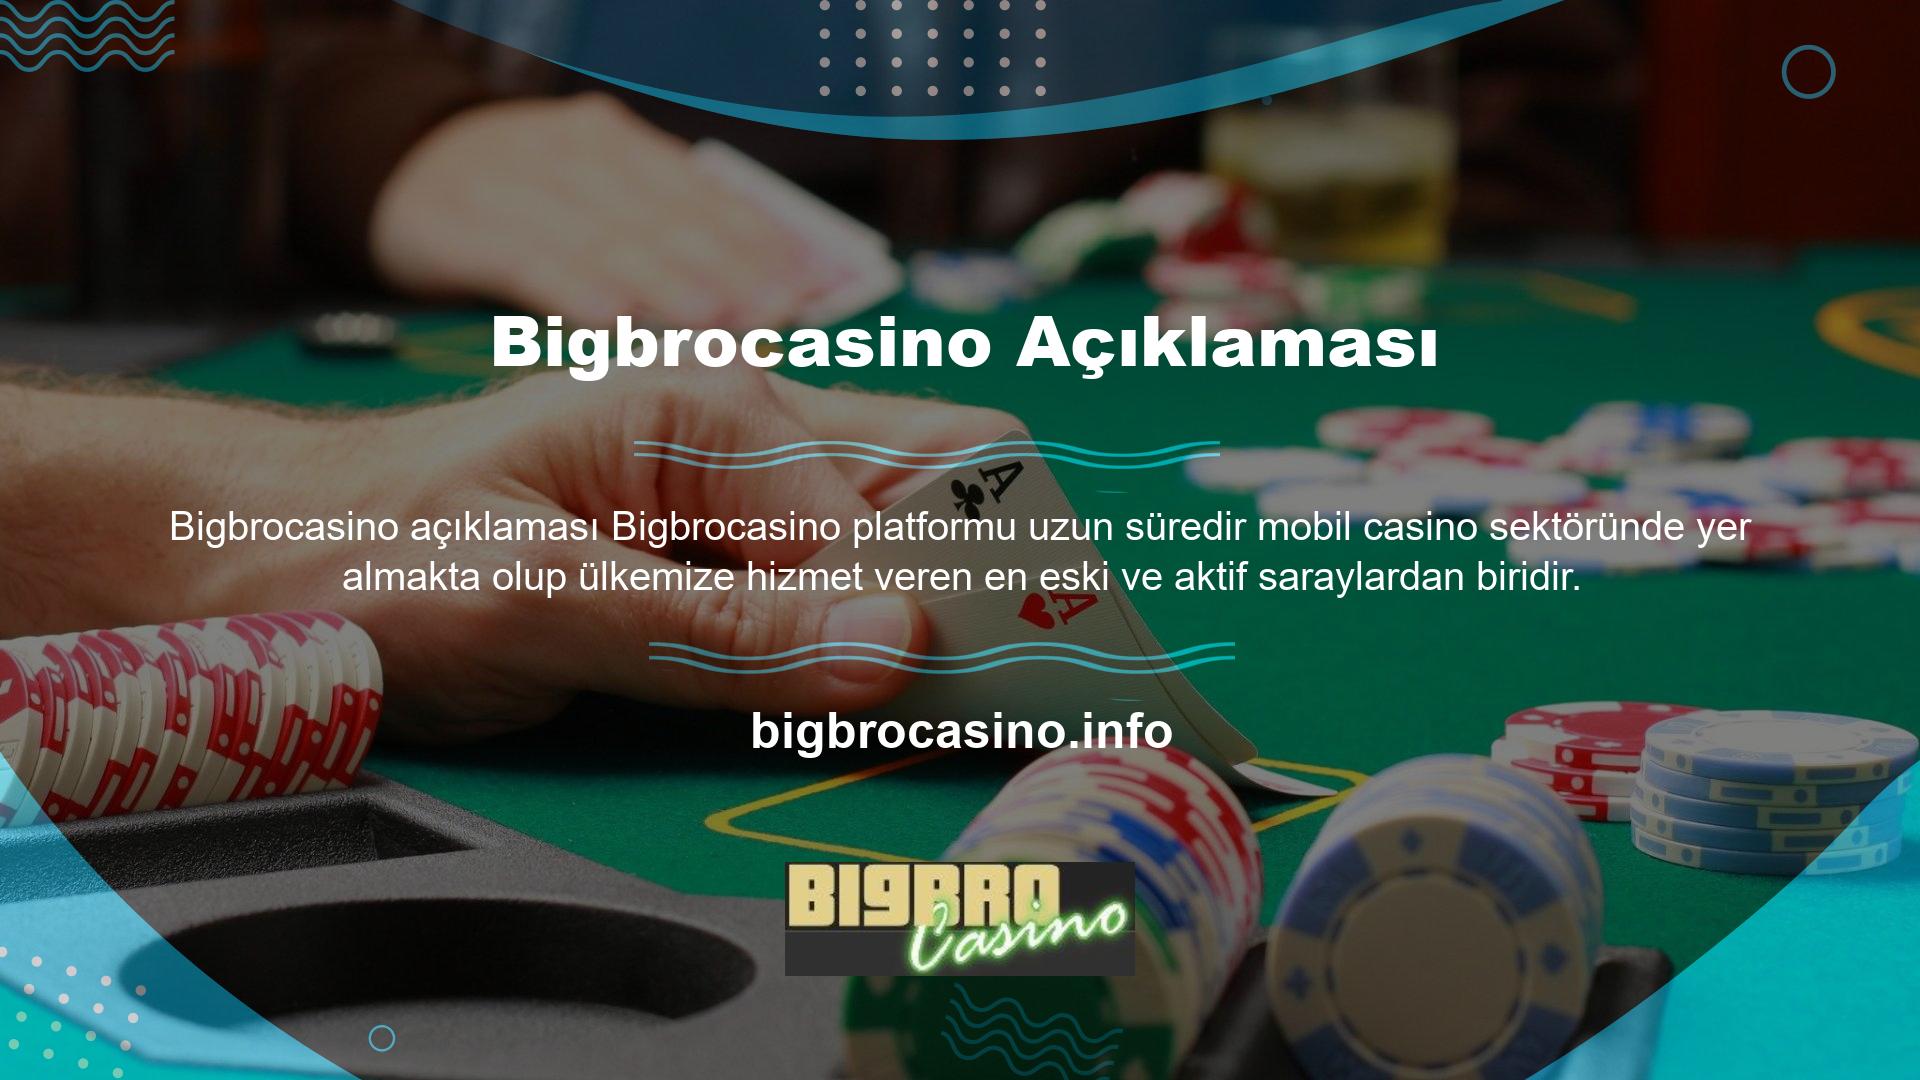 Bigbrocasino bahis giriş sayfası çoğu promosyon kampanyasında çeşitli avantajlar sunar ve bu da onu genellikle Bigbrocasino kullanıcılarının ilgisini çeken profesyonel bir web sitesi haline getirir